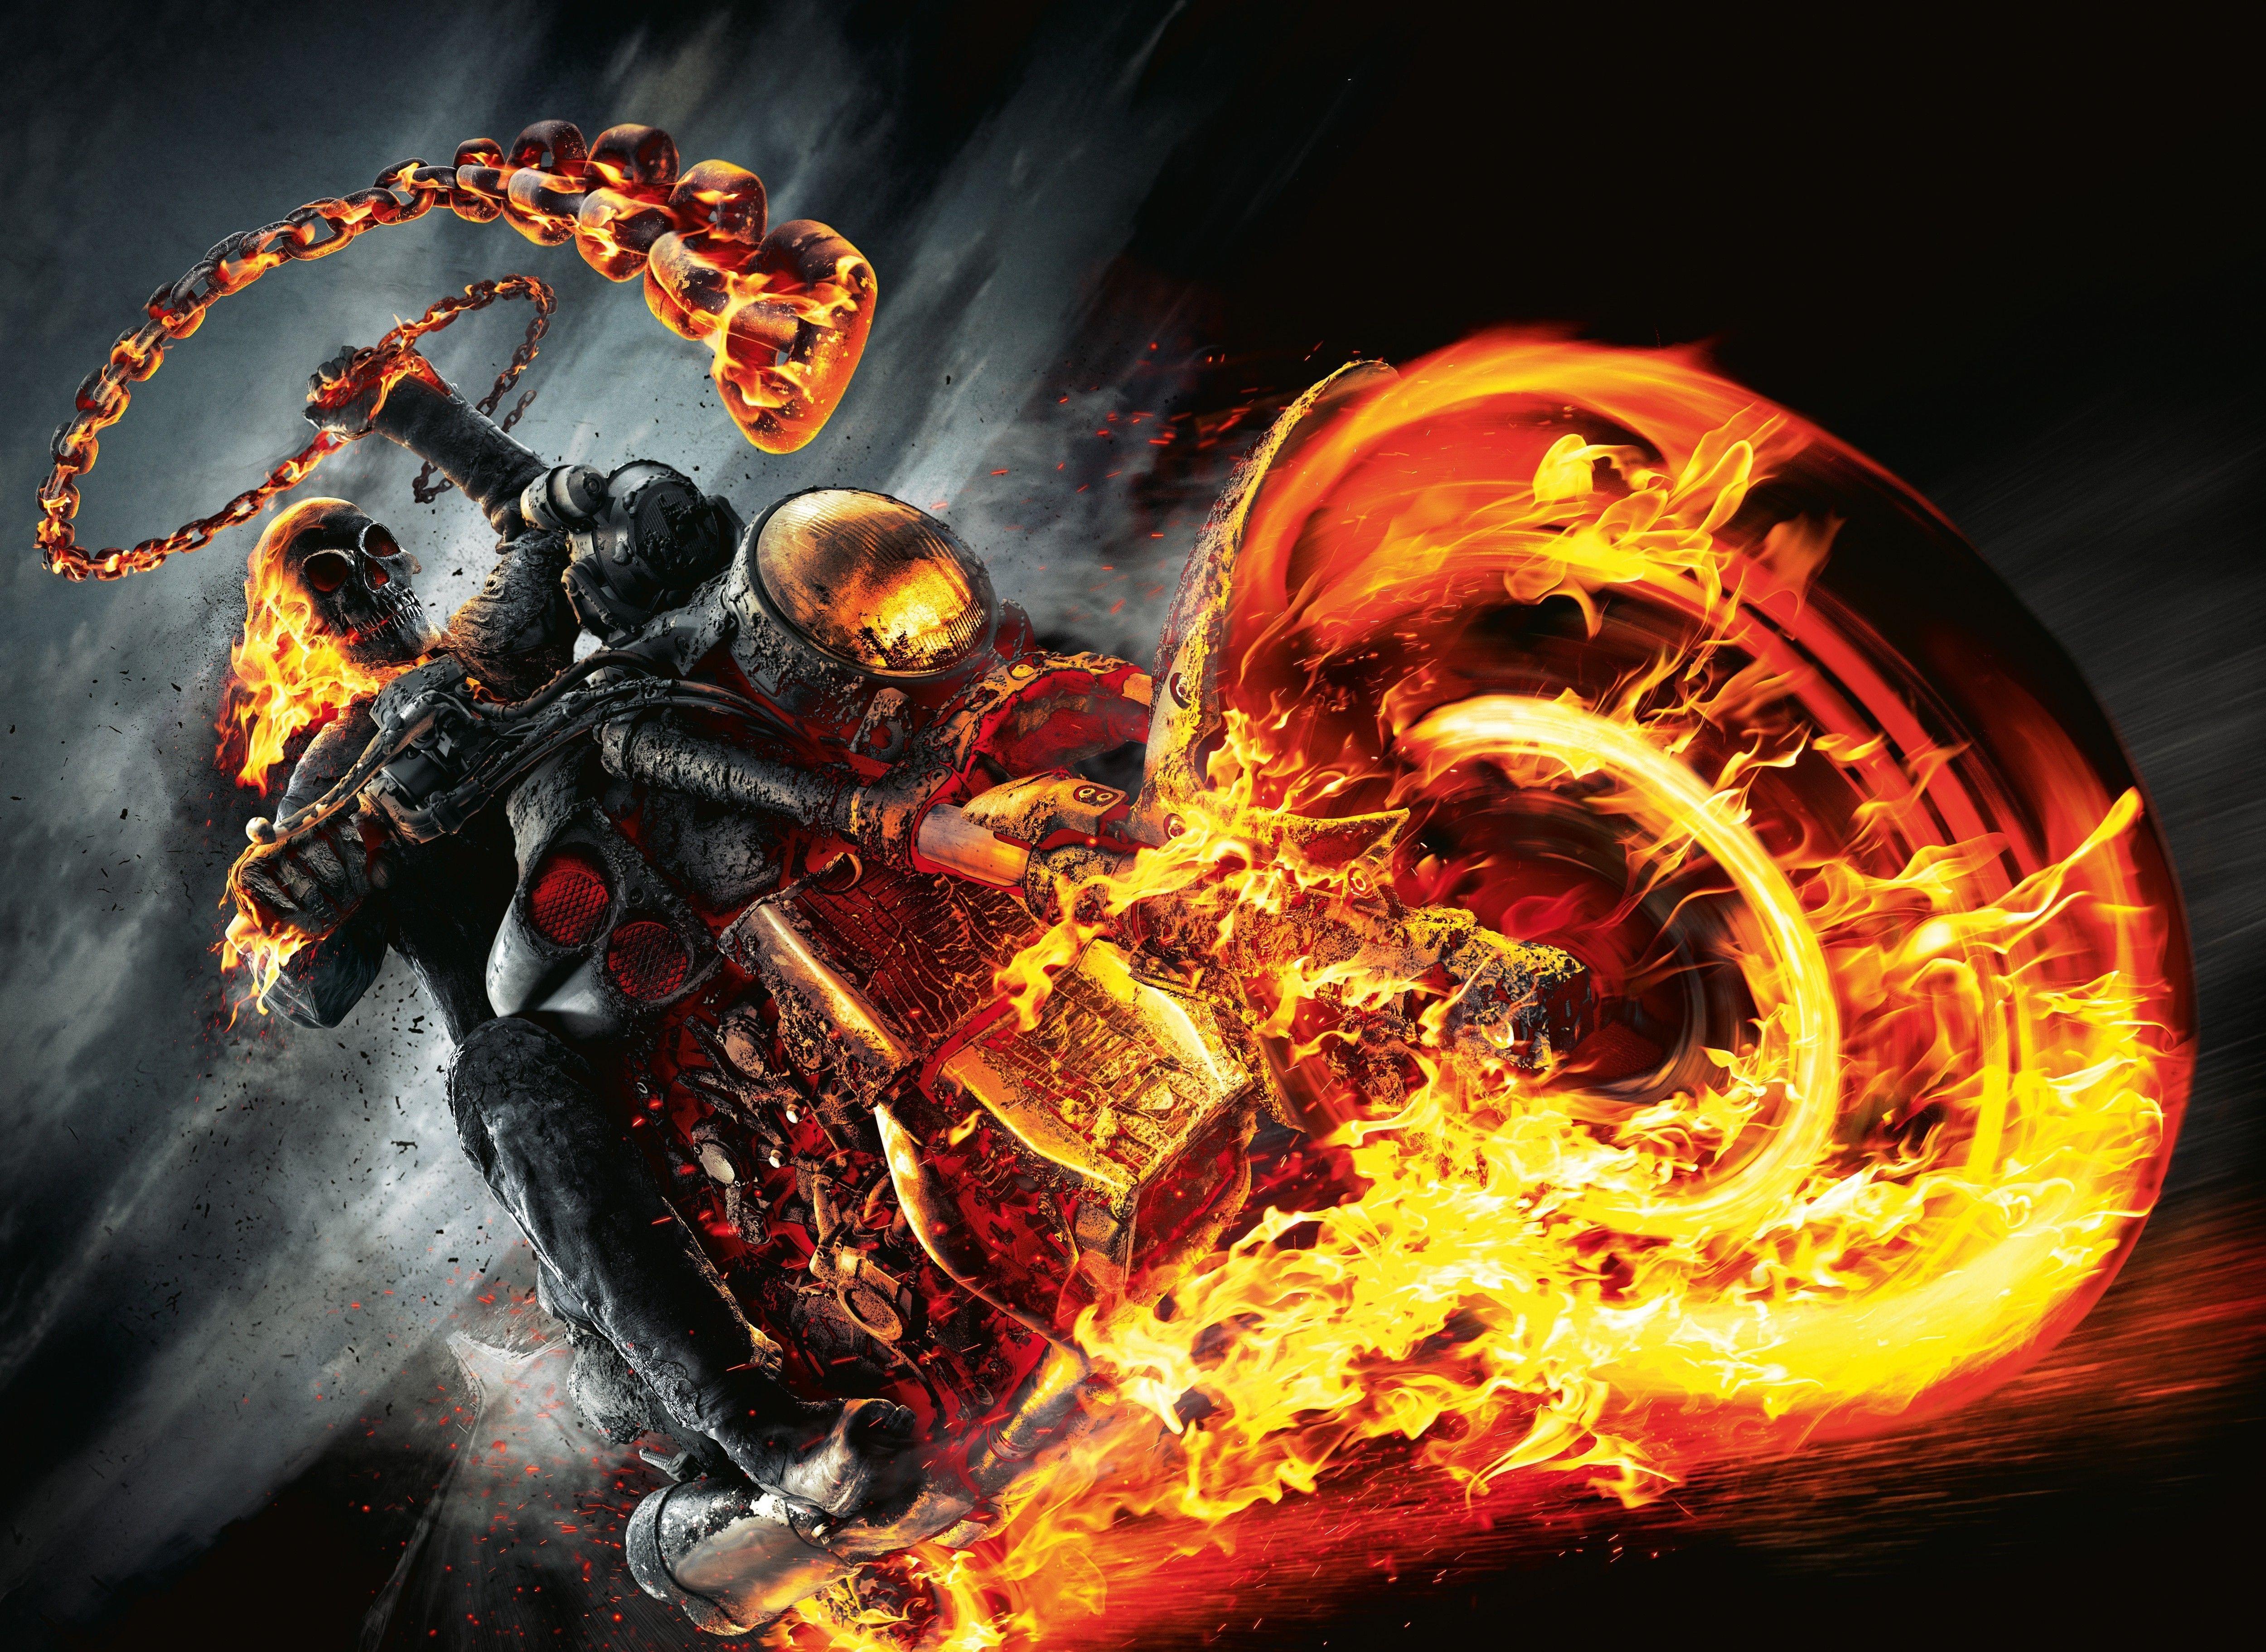 4K Ghost Rider Wallpapers - Top Những Hình Ảnh Đẹp